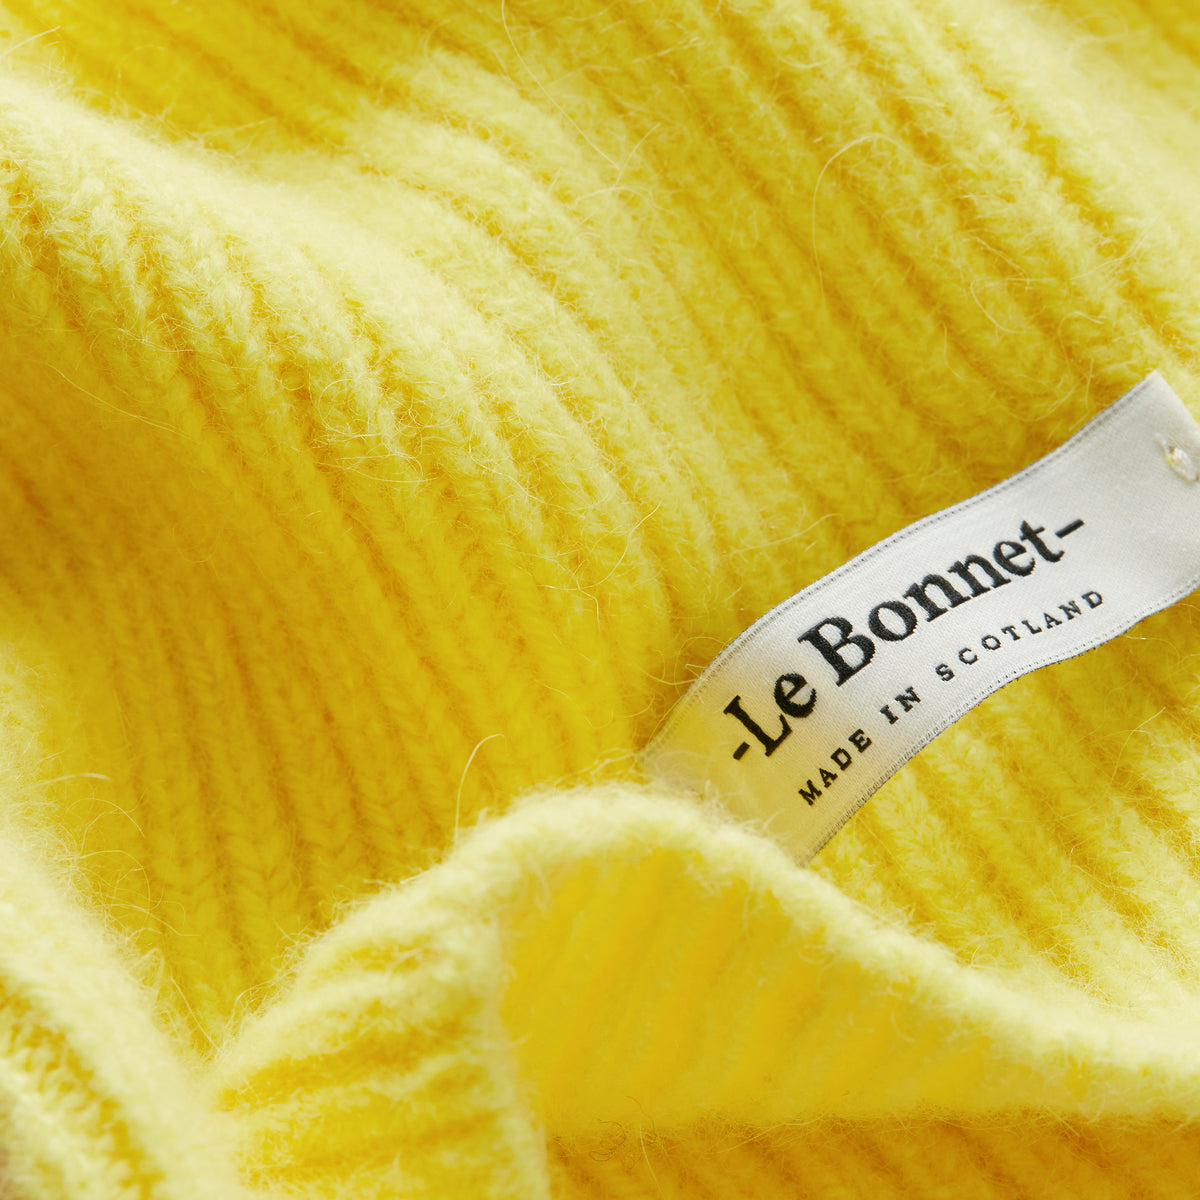 Le Bonnet Schal - Acid Yellow